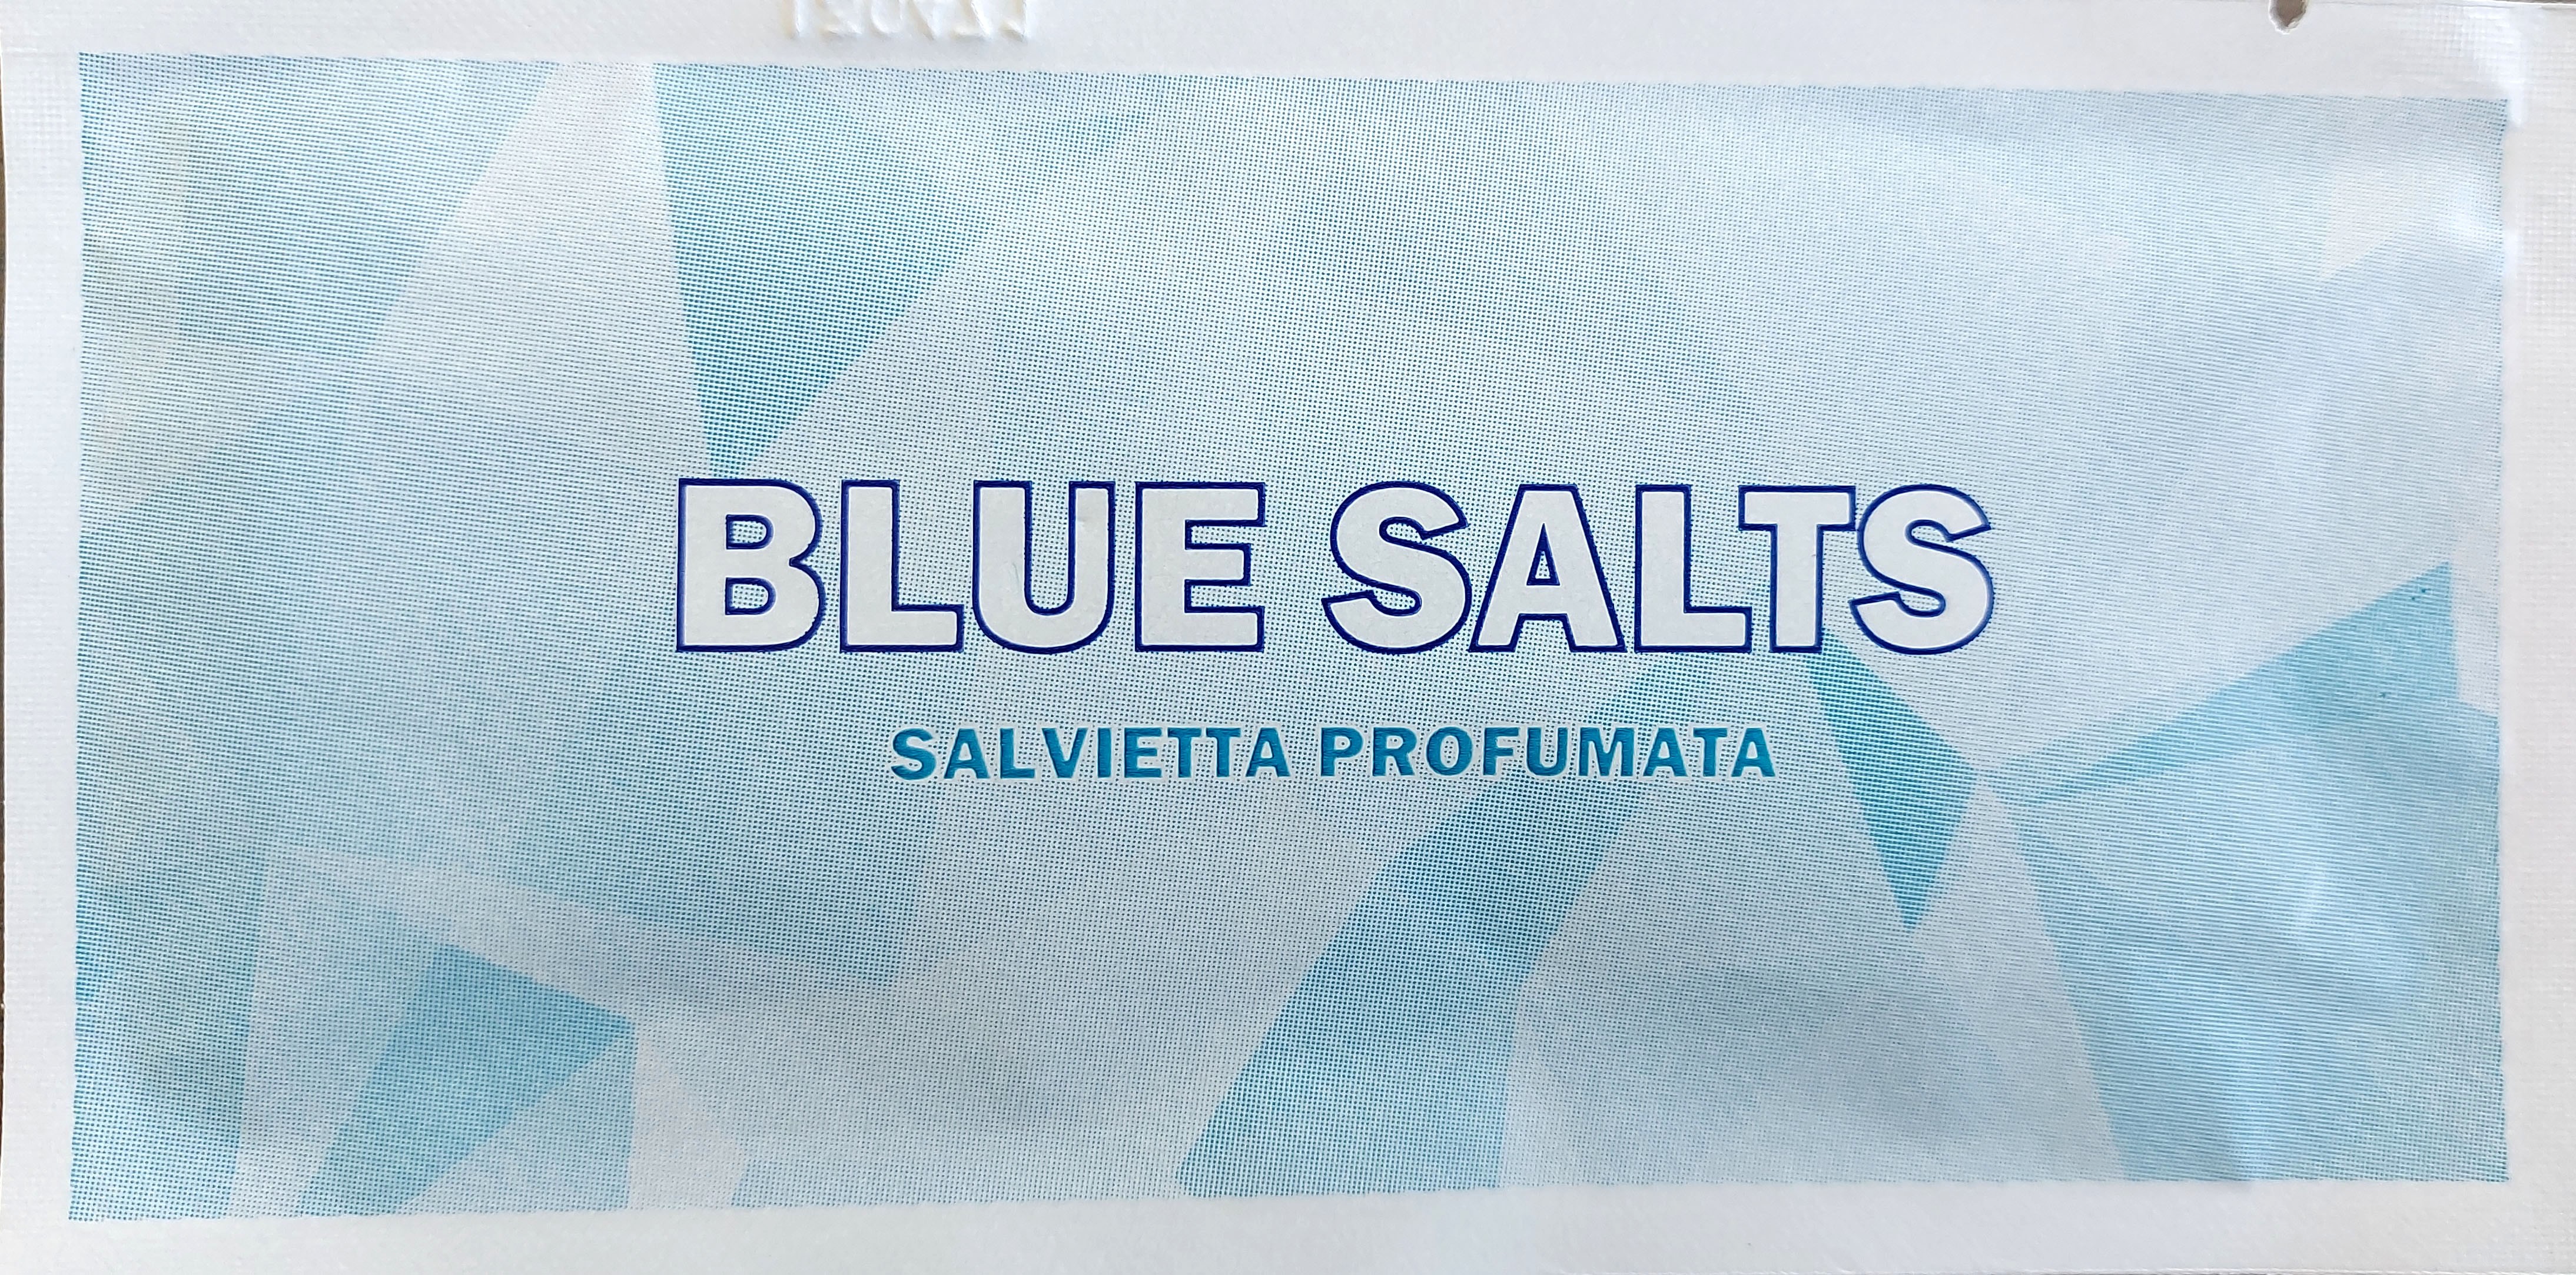 Vendita SALVIETTE PROFUMATE BLUE SALTS - Articoli per